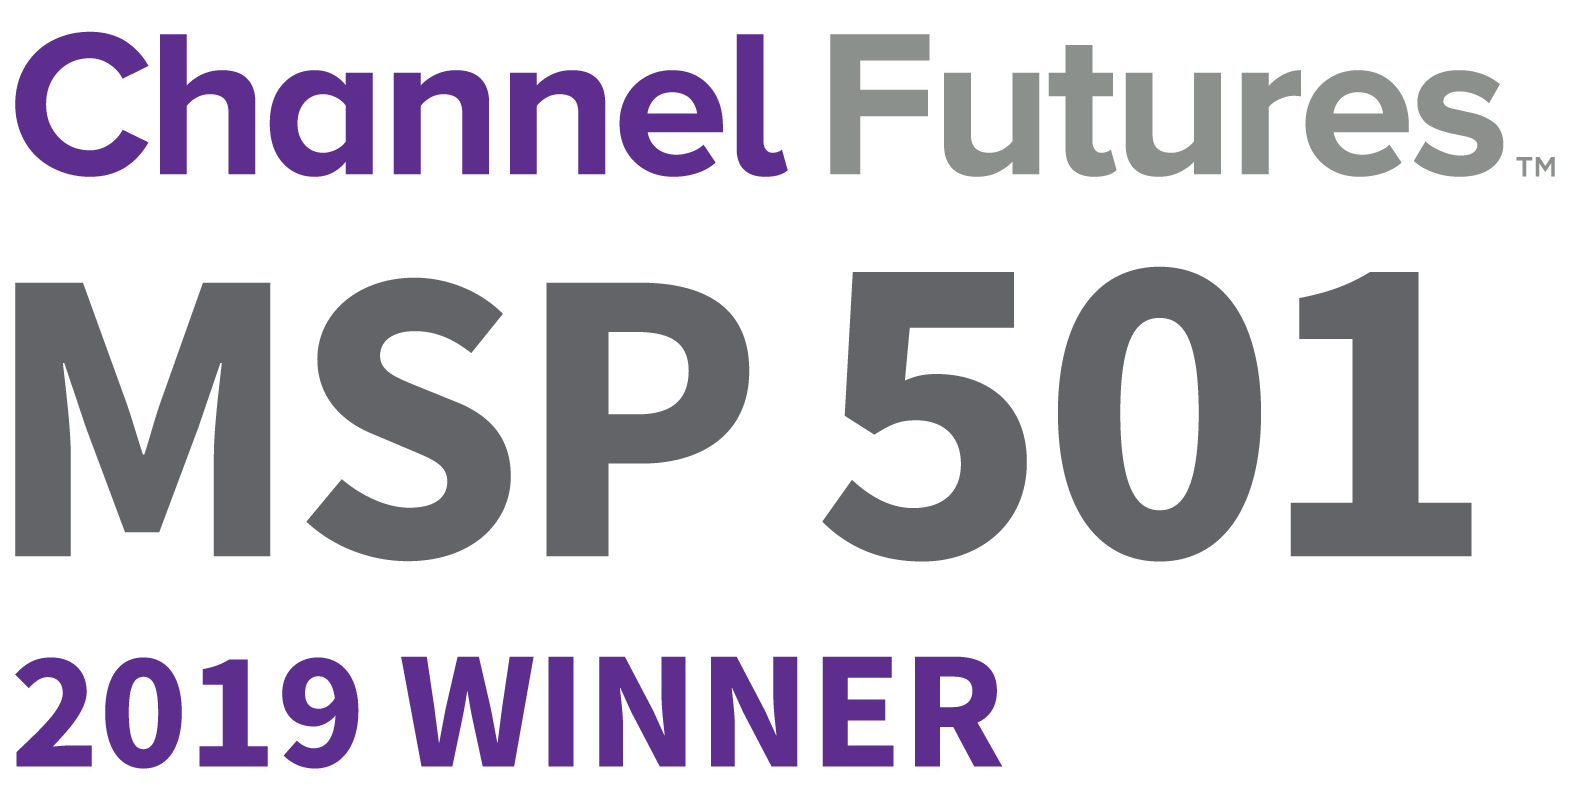 Channel Futures MSP 501 2019 Winner